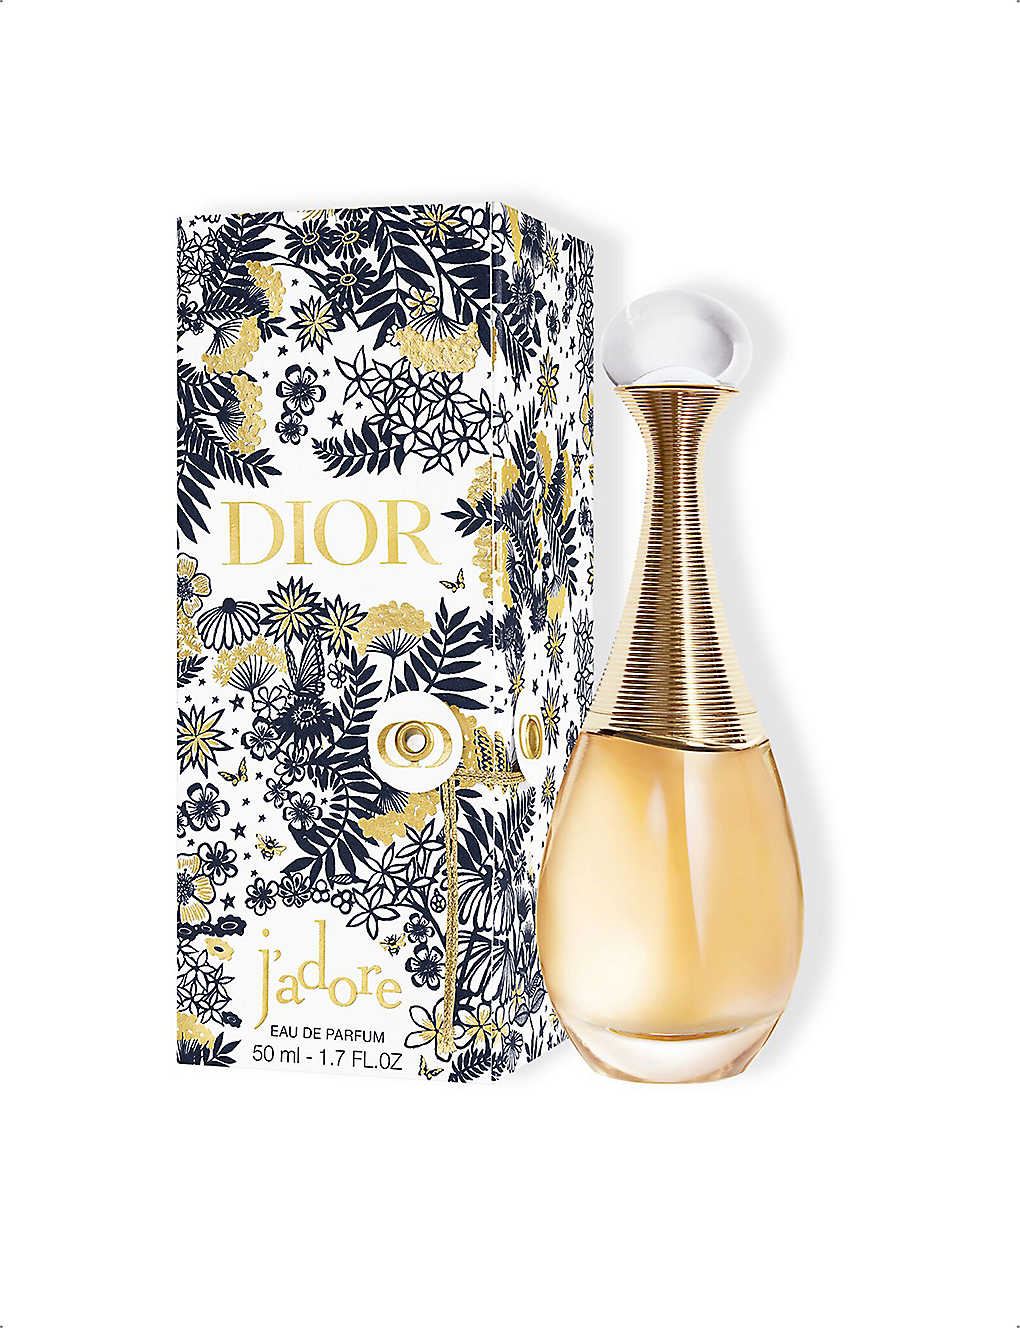 Dior Limited-Edition J'adore Eau de Parfum